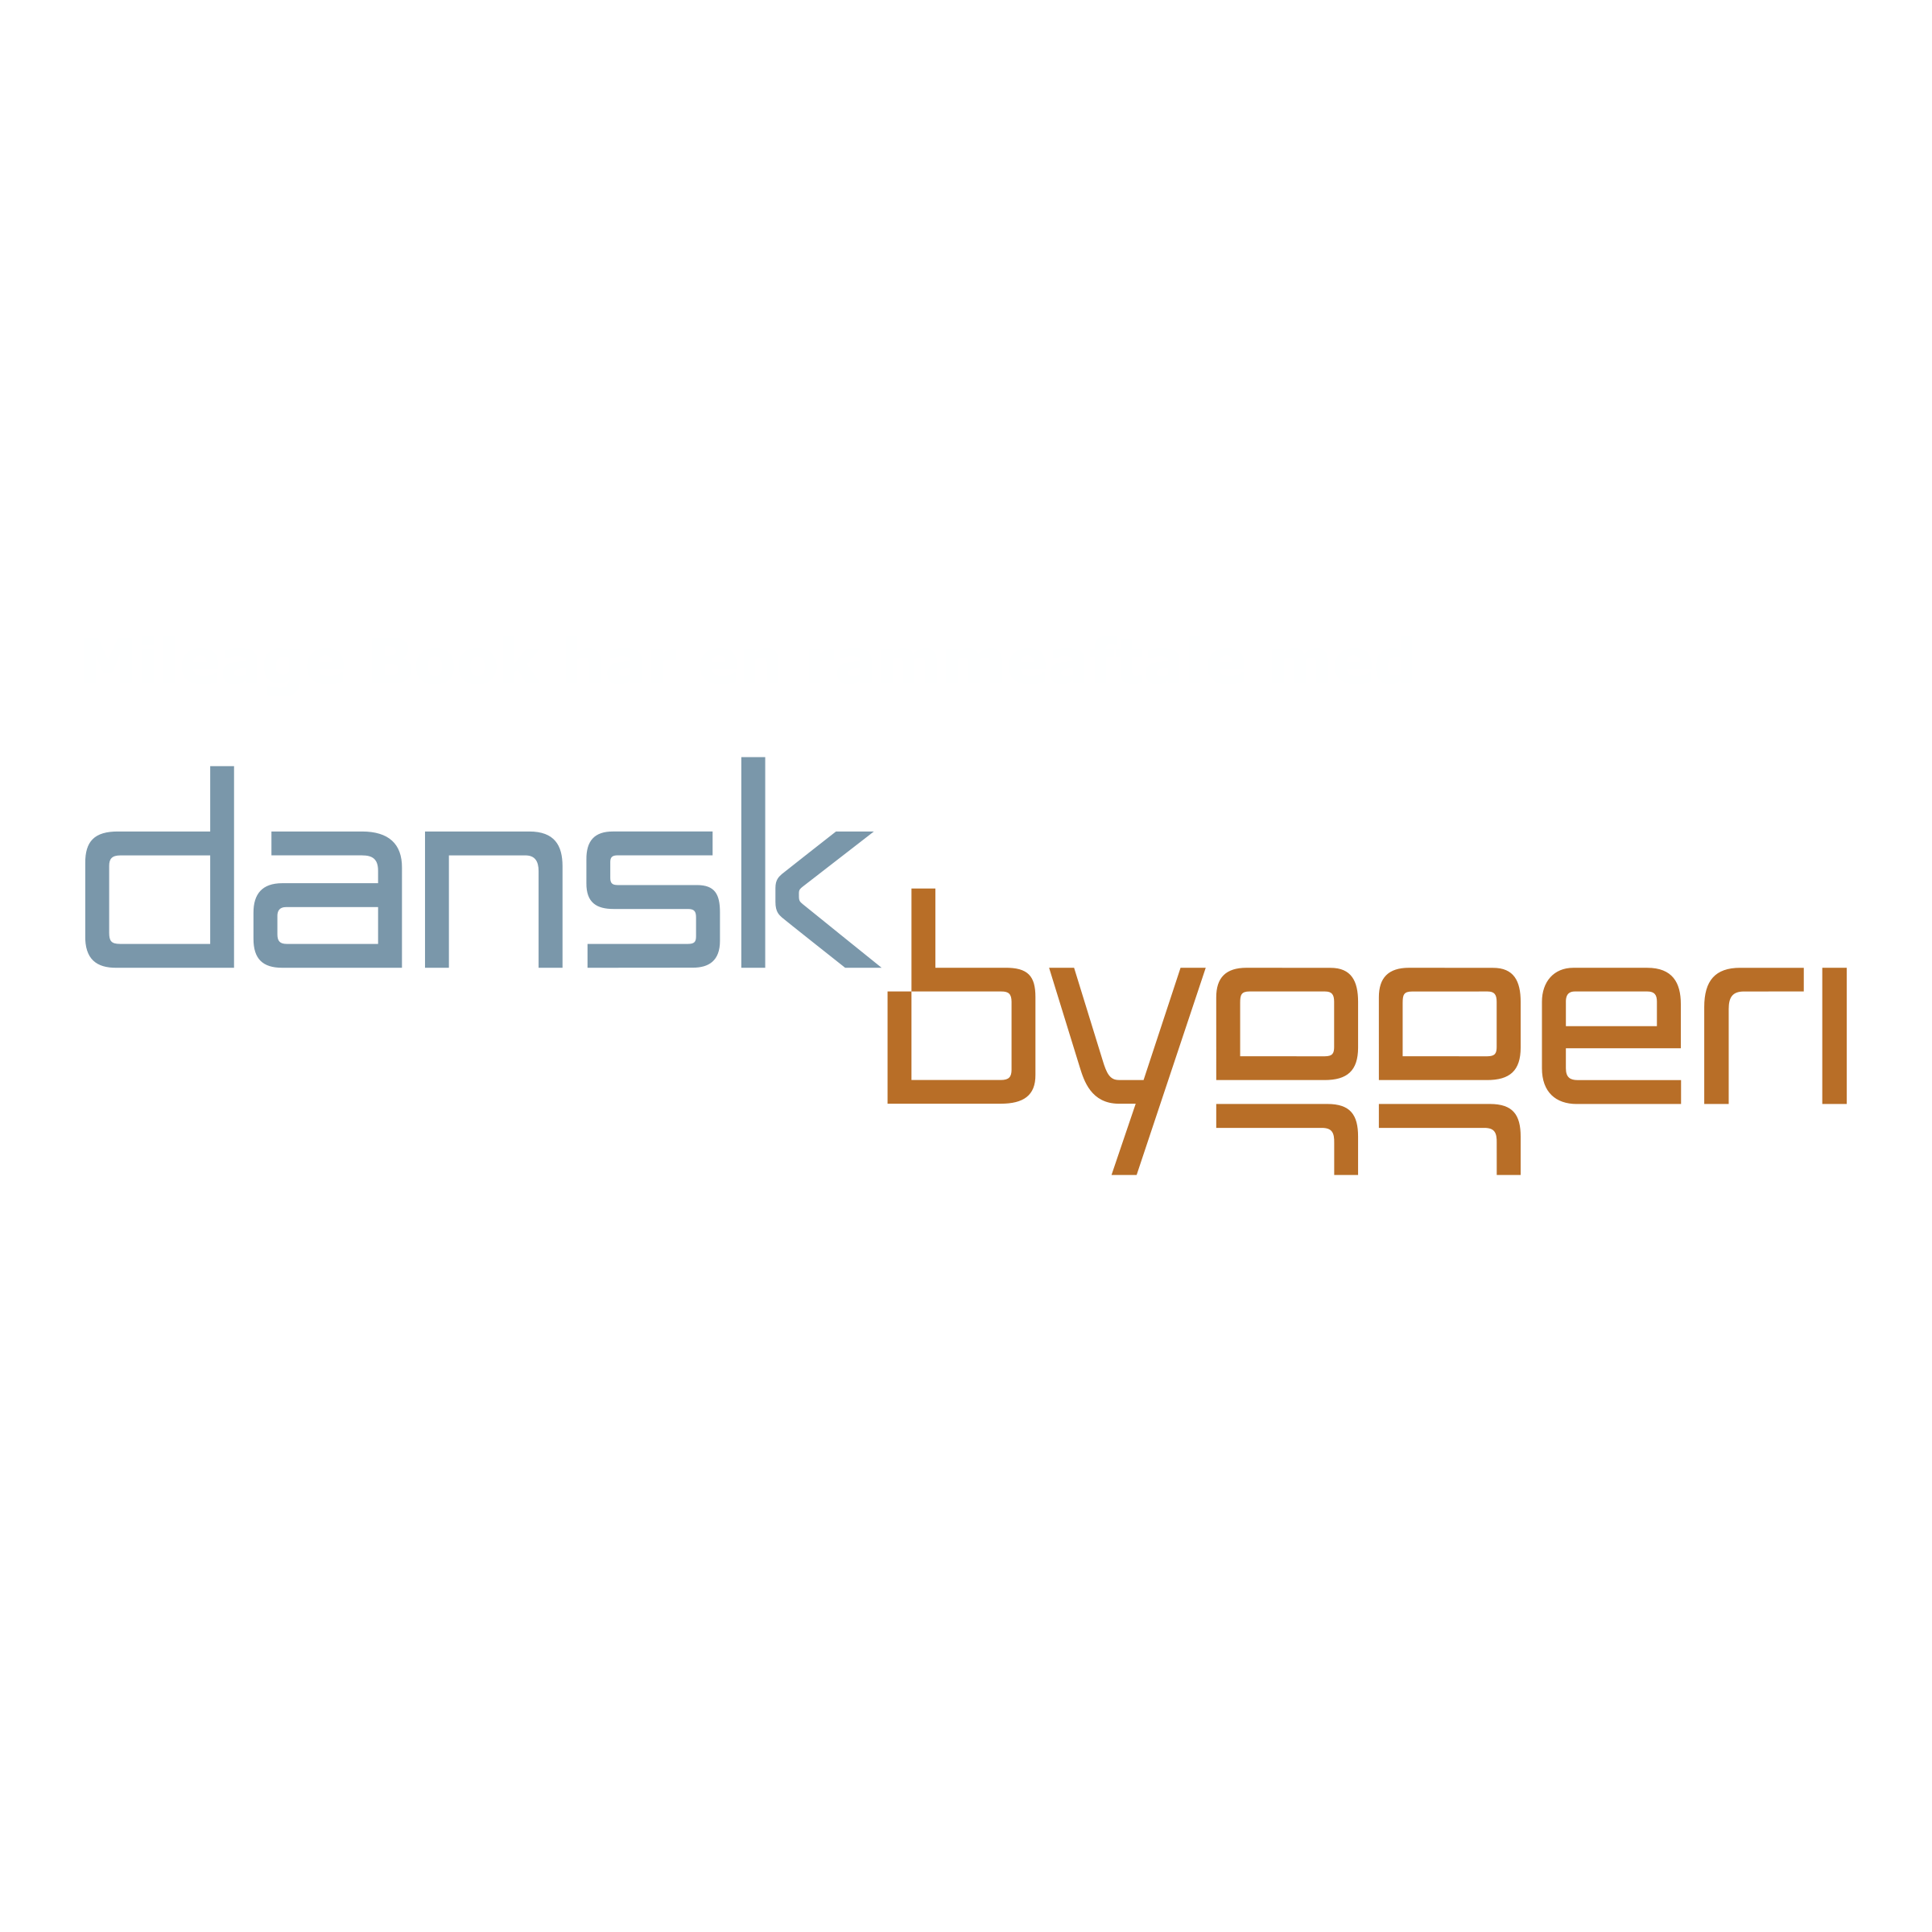 dansk-byggeri-logo-png-transparent-1.png